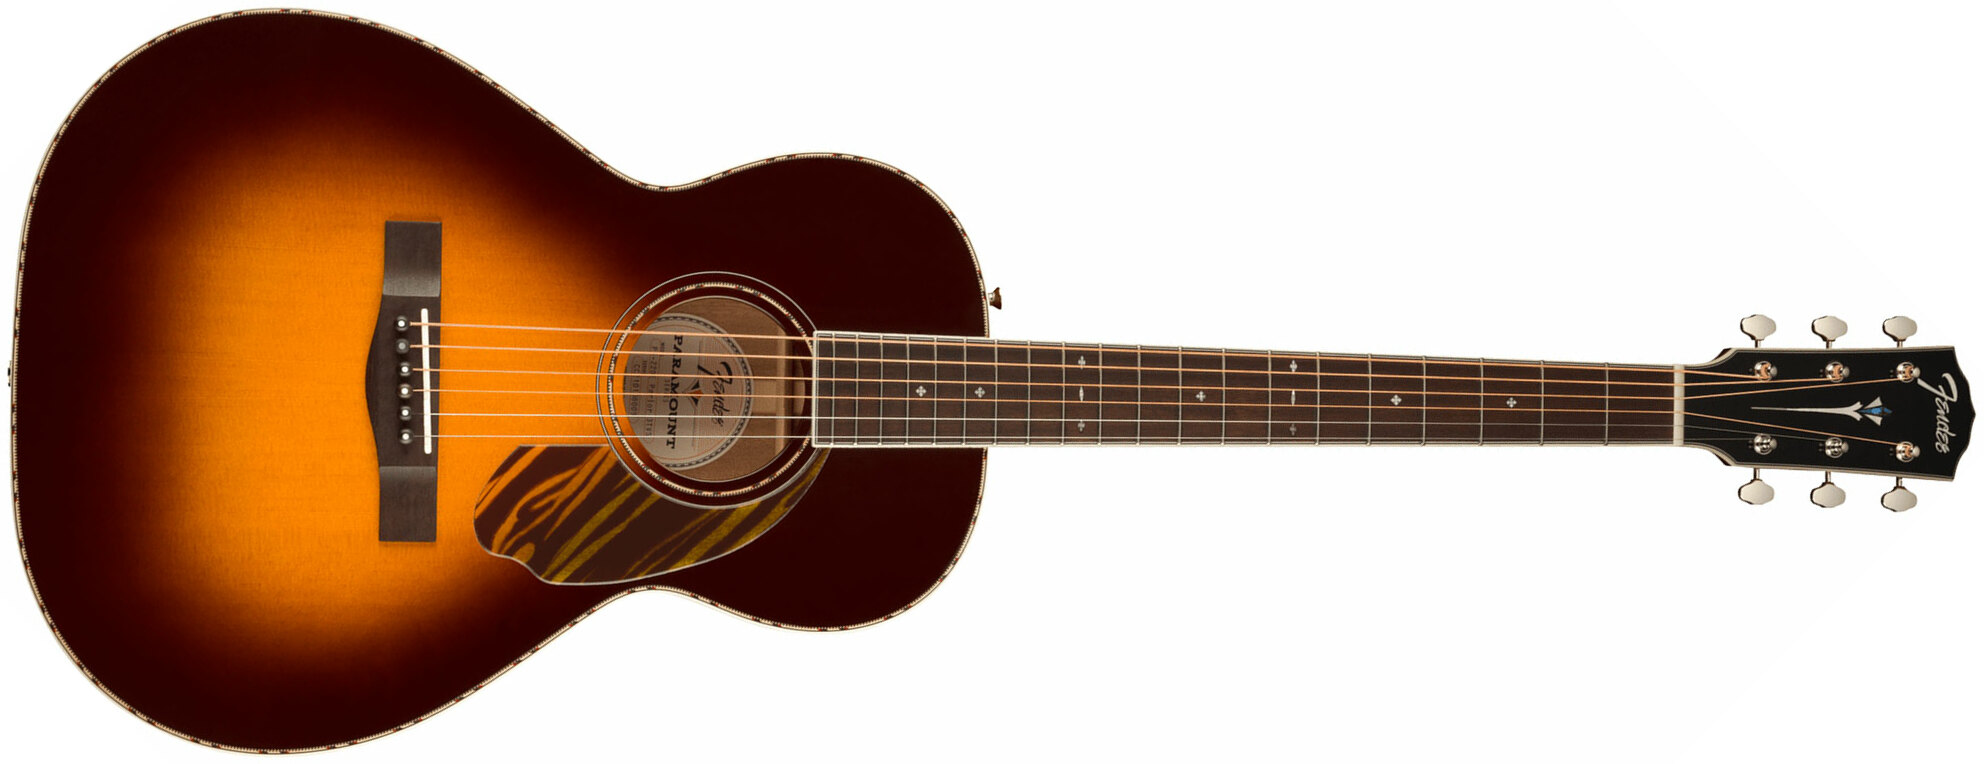 Fender Ps-220e Paramount Parlor Epicea Acajou Ova - 3-color Vintage Sunburst - Elektroakustische Gitarre - Main picture